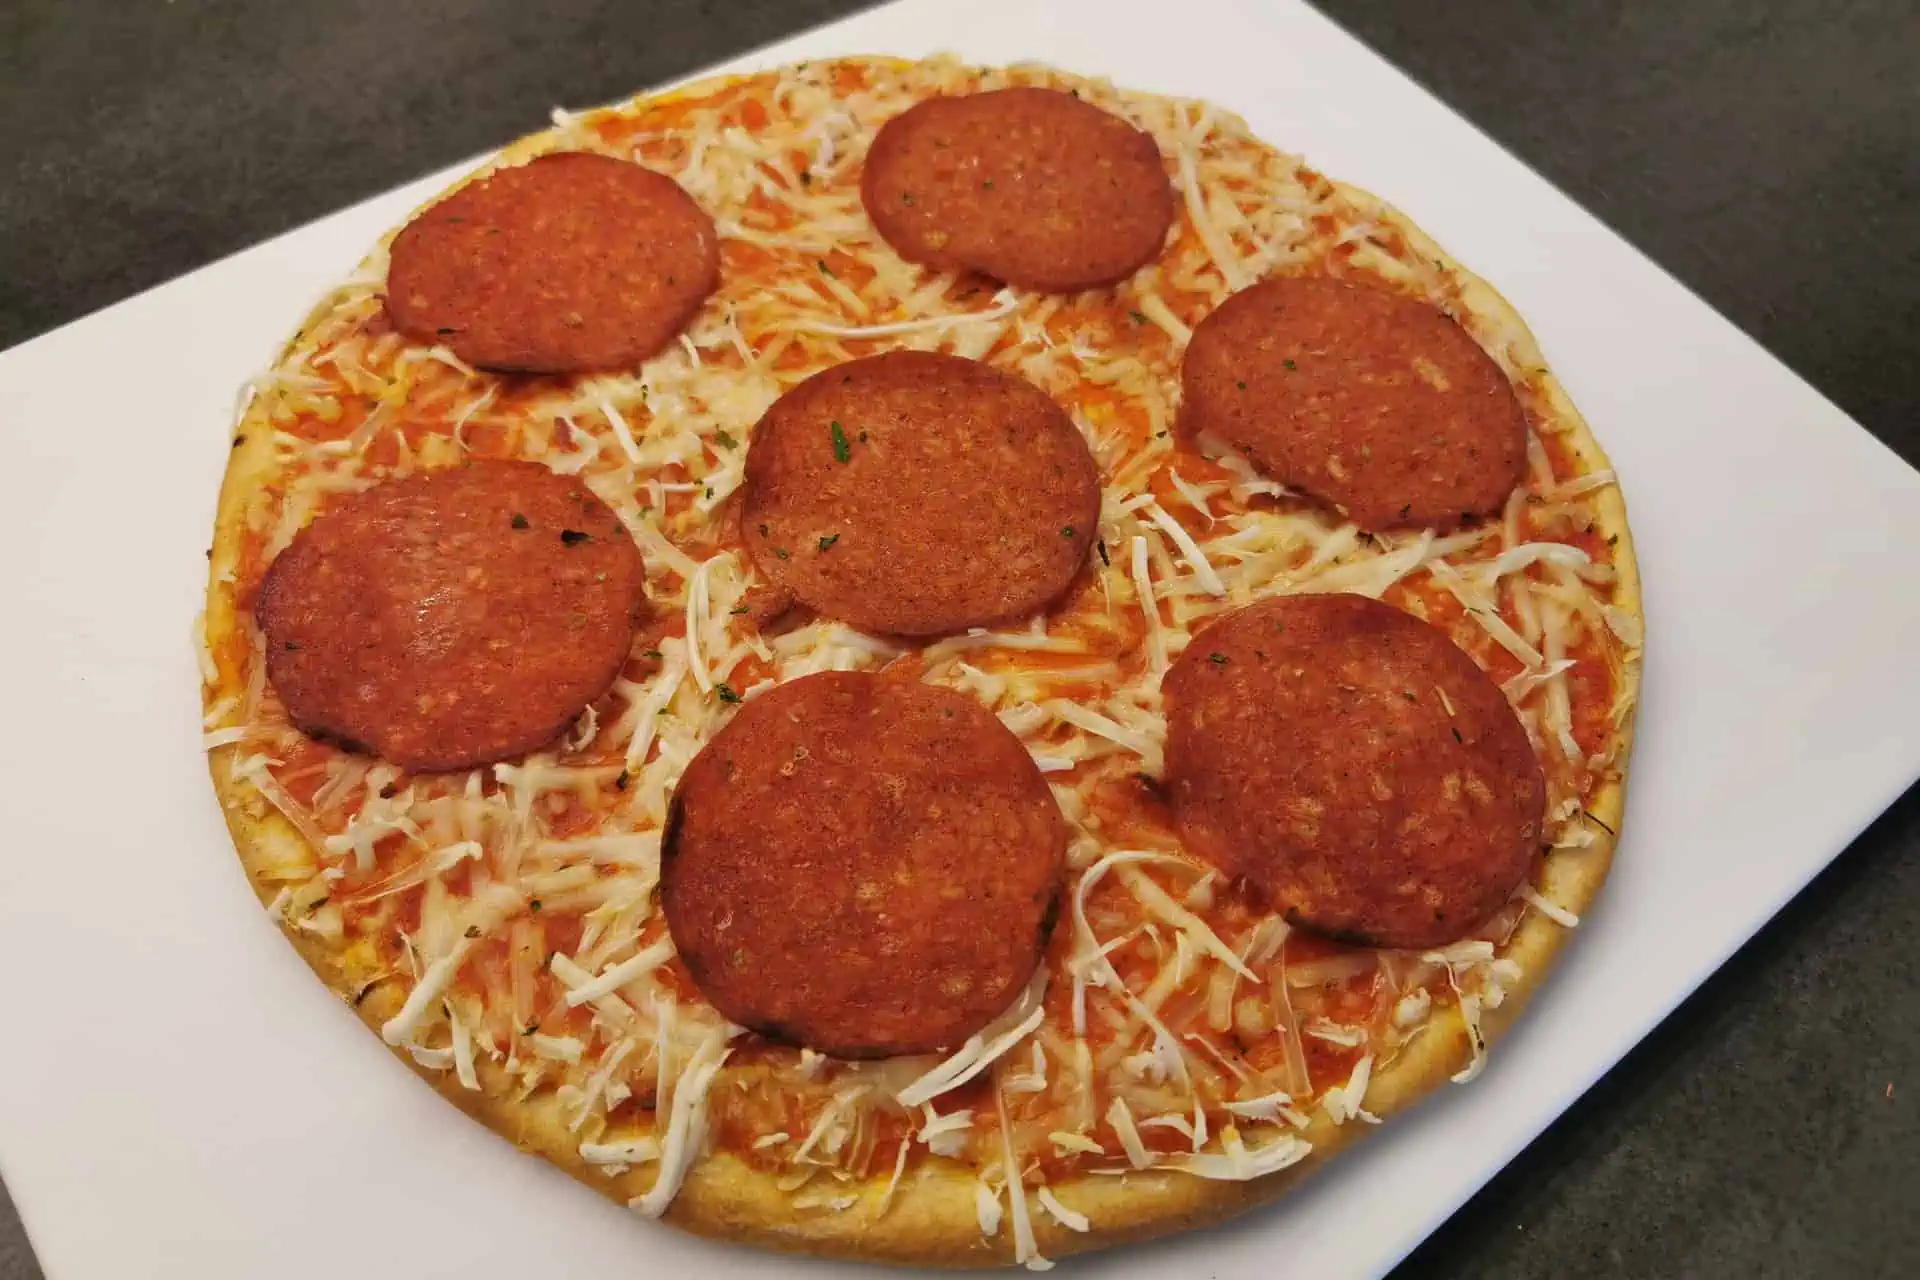 Dr. Oetker Ristorante: Vegane Salami Pizza